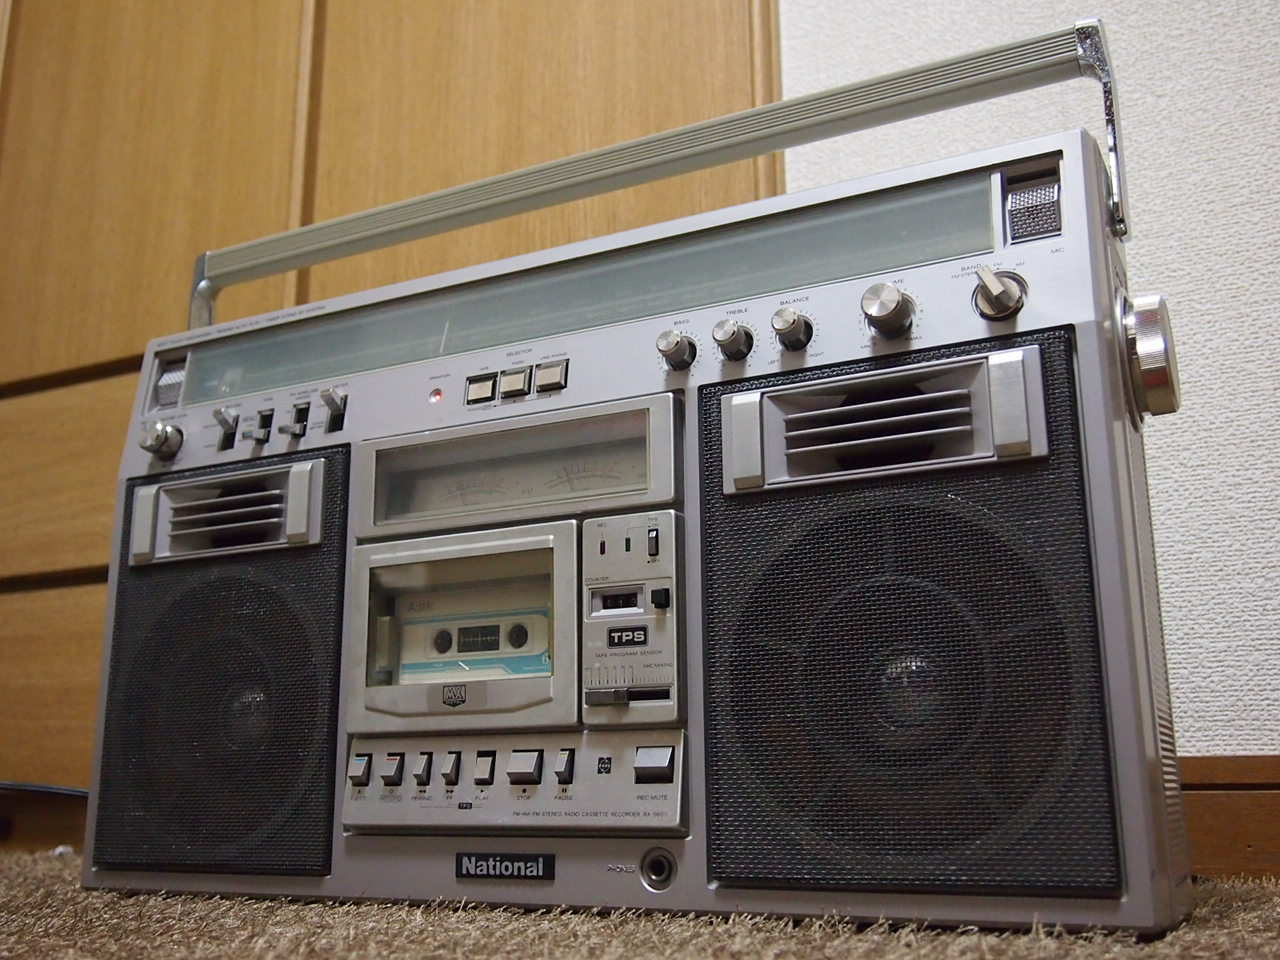 オーディオ機器 ラジオ National RX-5600 - SALTAWAY - Junk Audio Laboratory -